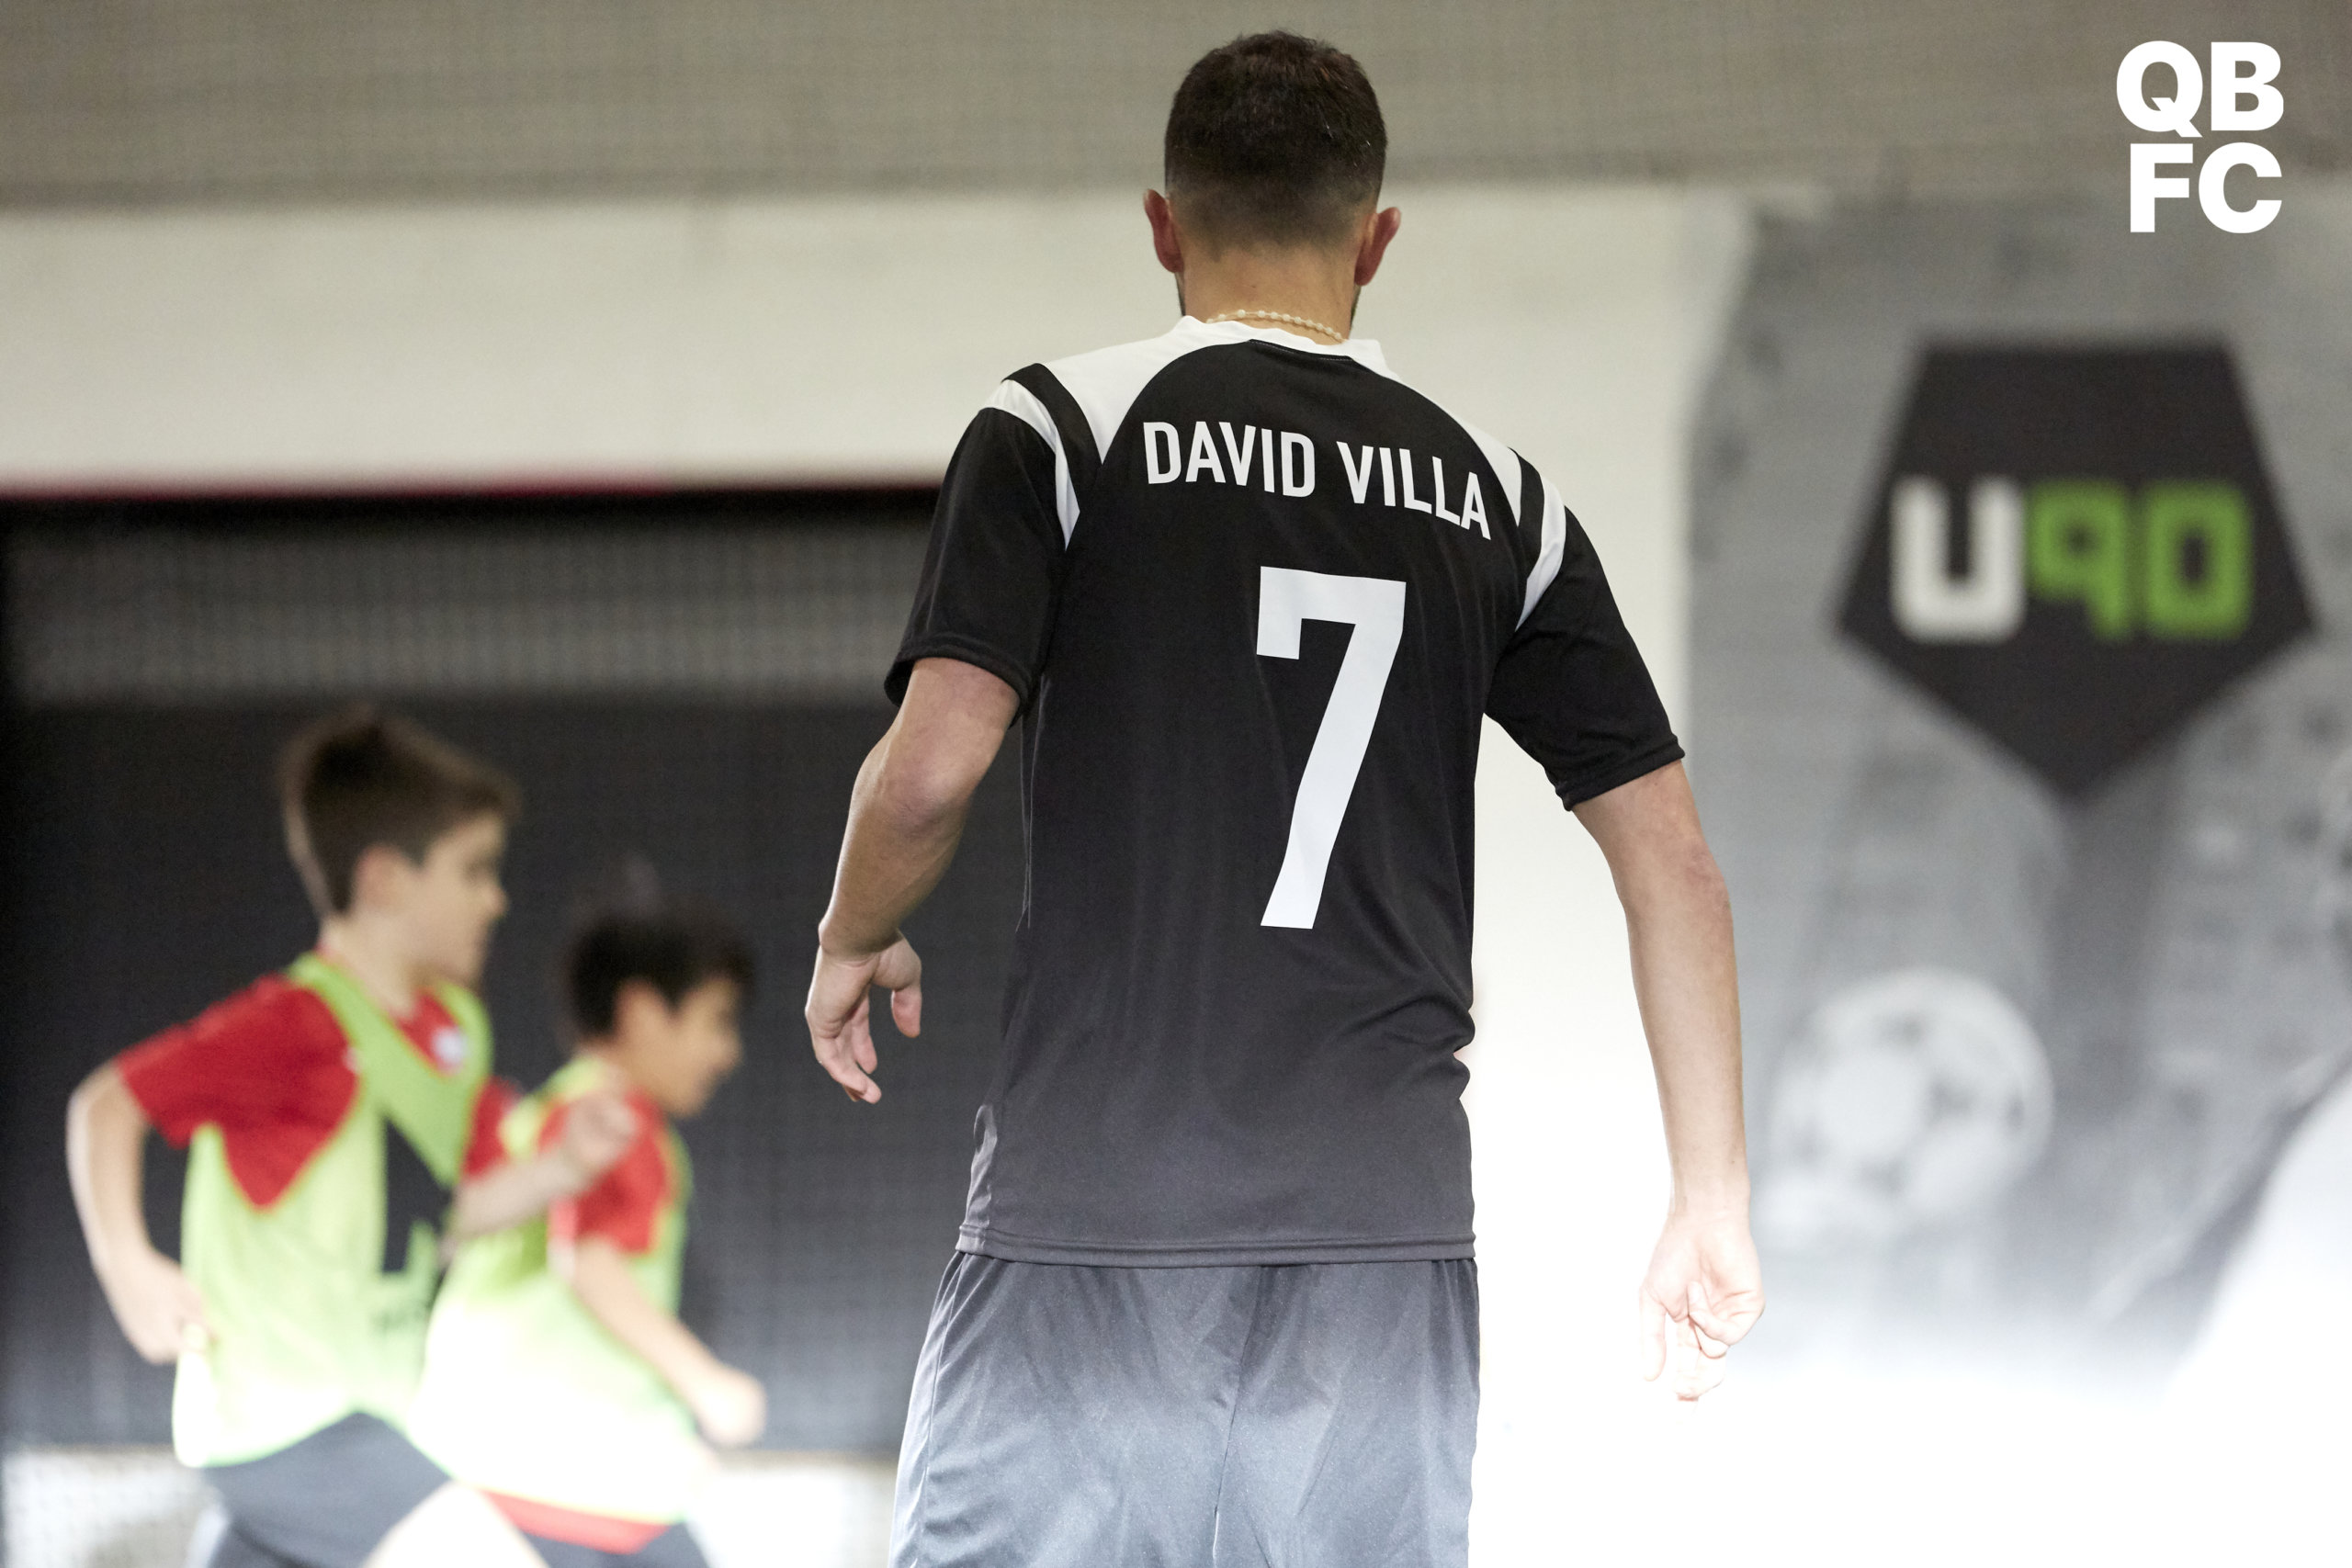 David Villa y Queensboro FC acogen partido con niños y Fan Day